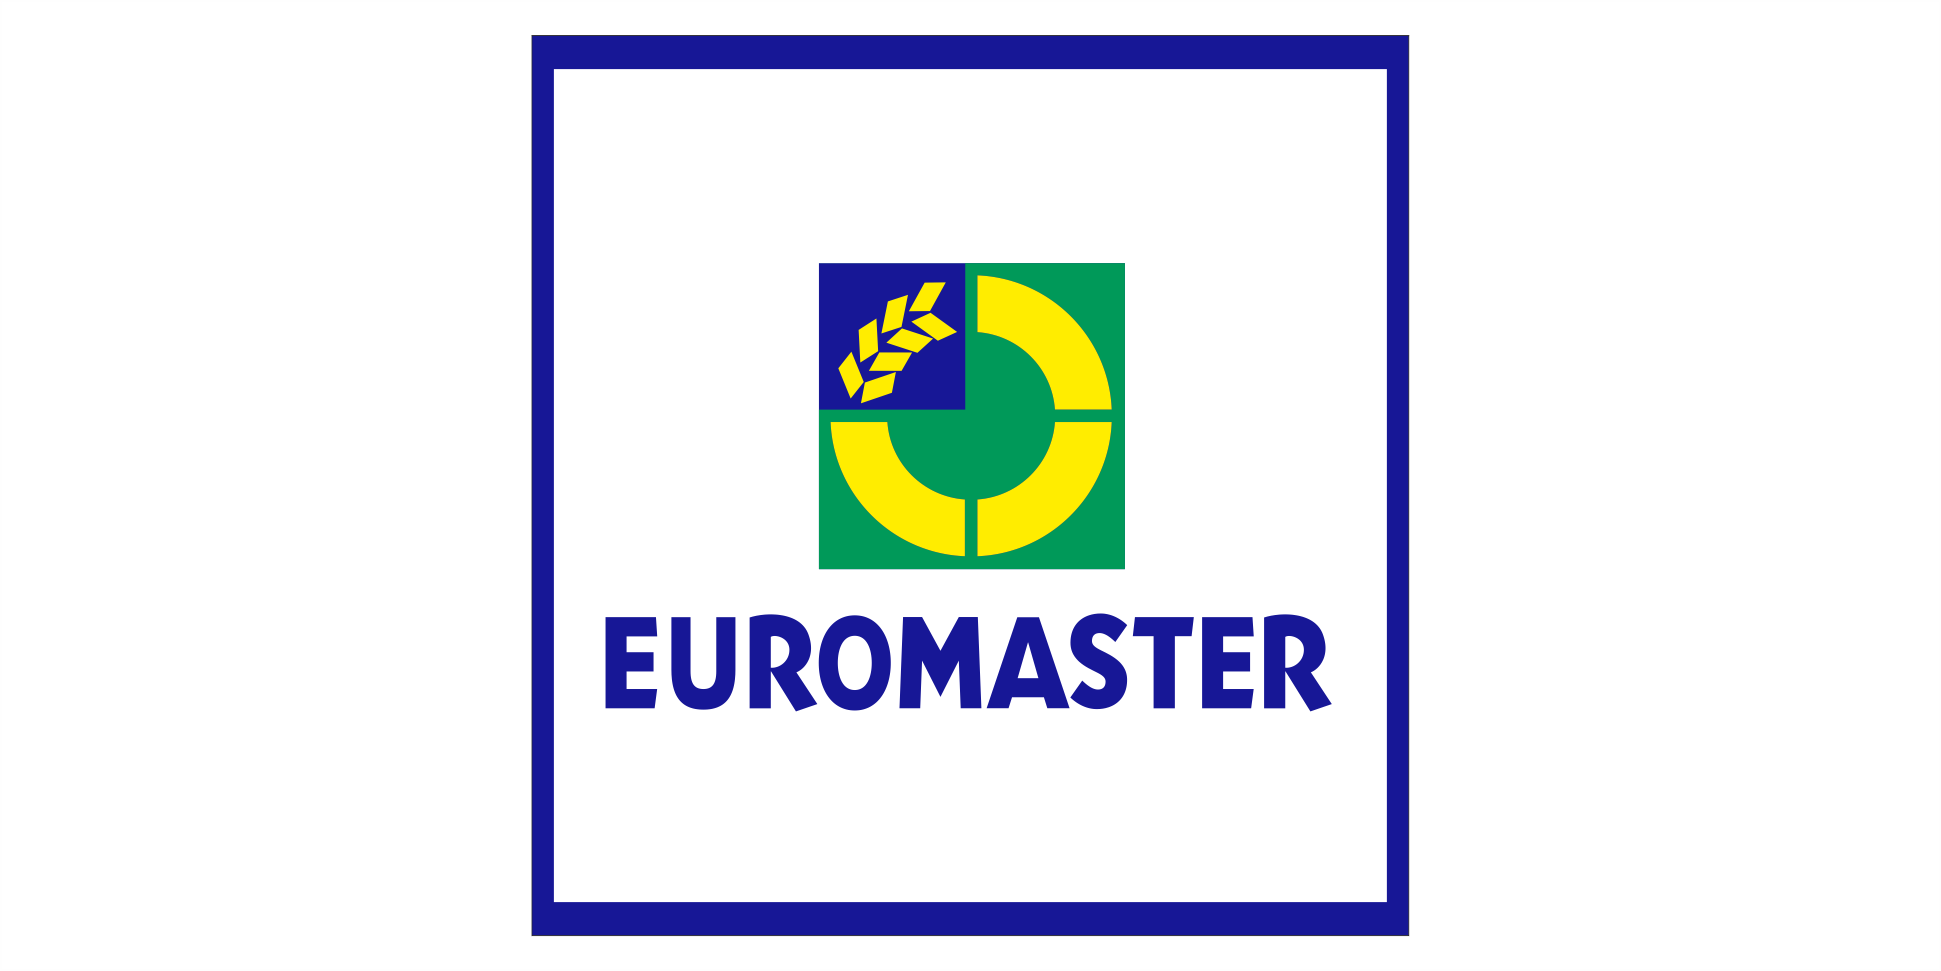 2 / Euromaster